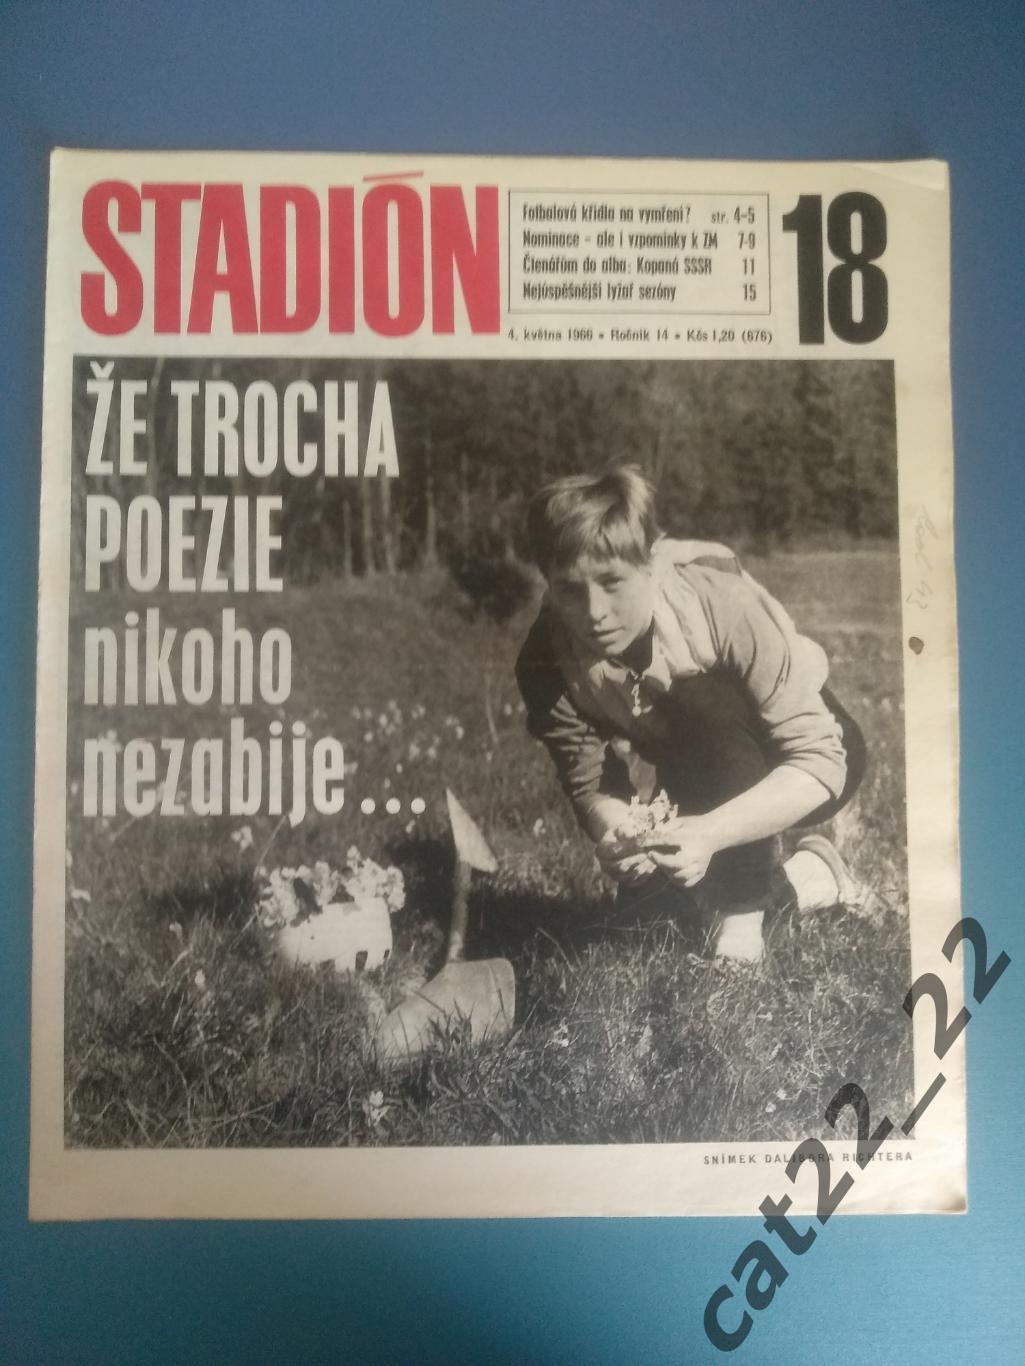 Журнал Стадион/Stadion. Полный номер. Футбол. СССР 18 1966